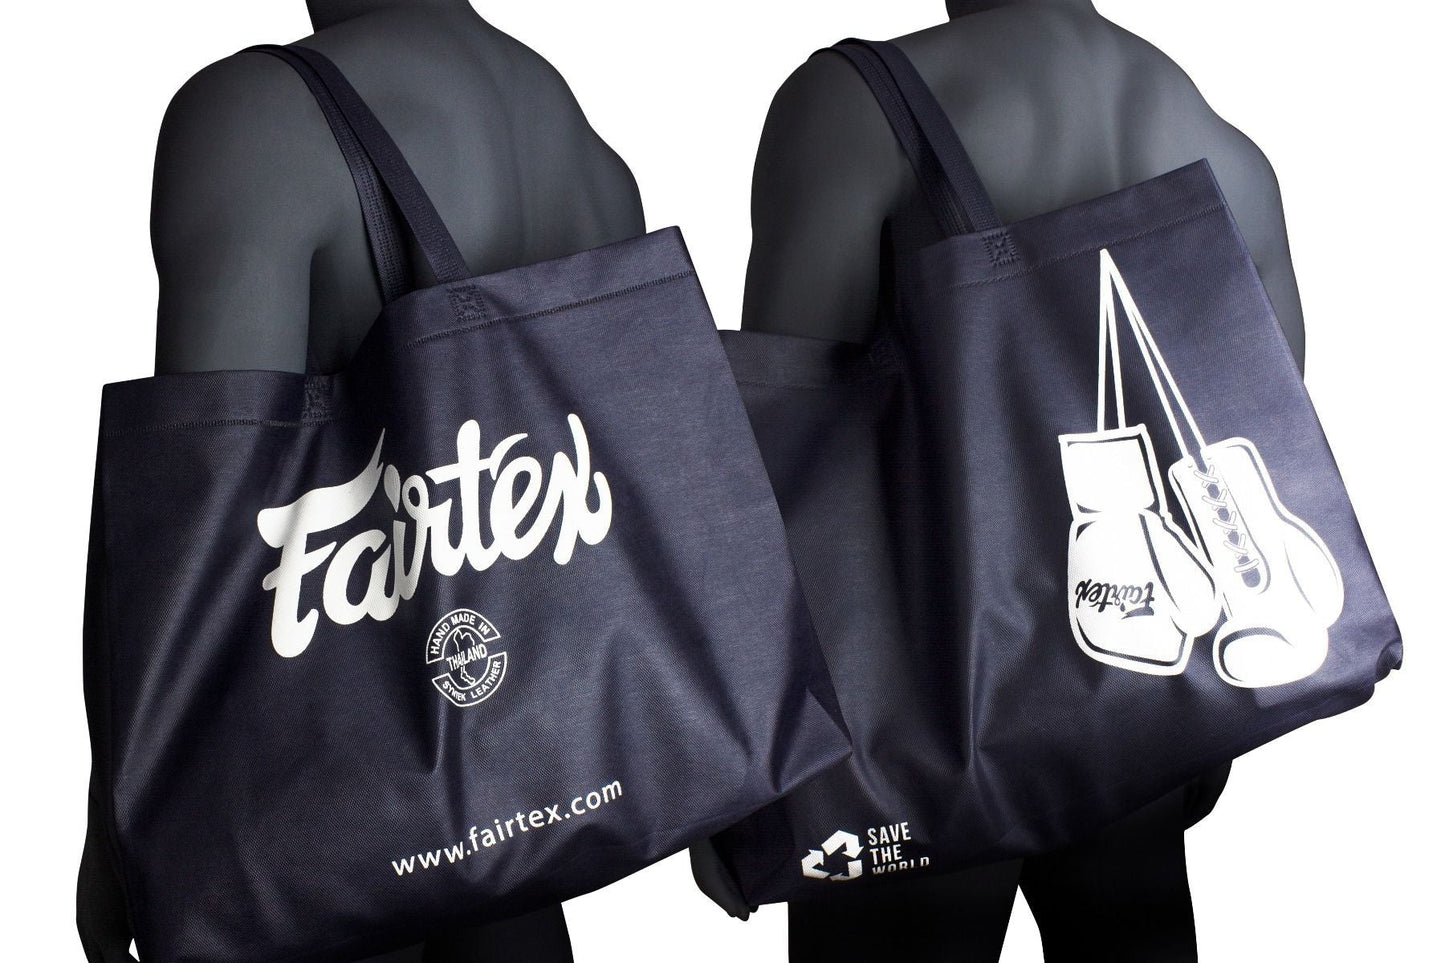 Fairtex Bag "Save Earth" Tote Bag - SUPER EXPORT SHOP